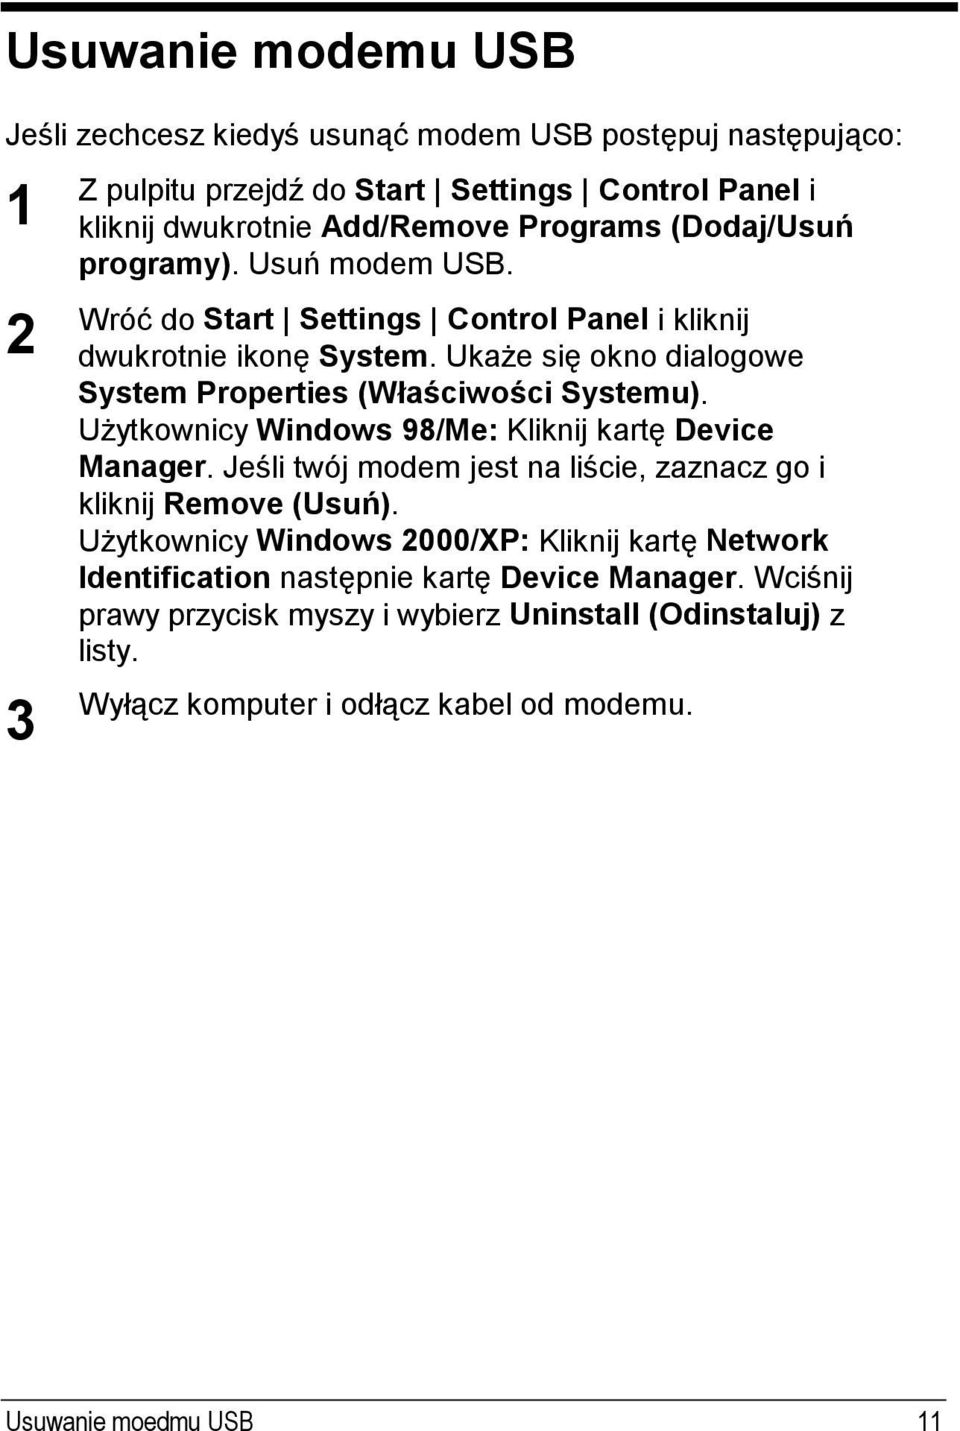 Użytkownicy Windows 98/Me: Kliknij kartę Device Manager. Jeśli twój modem jest na liście, zaznacz go i kliknij Remove (Usuń).